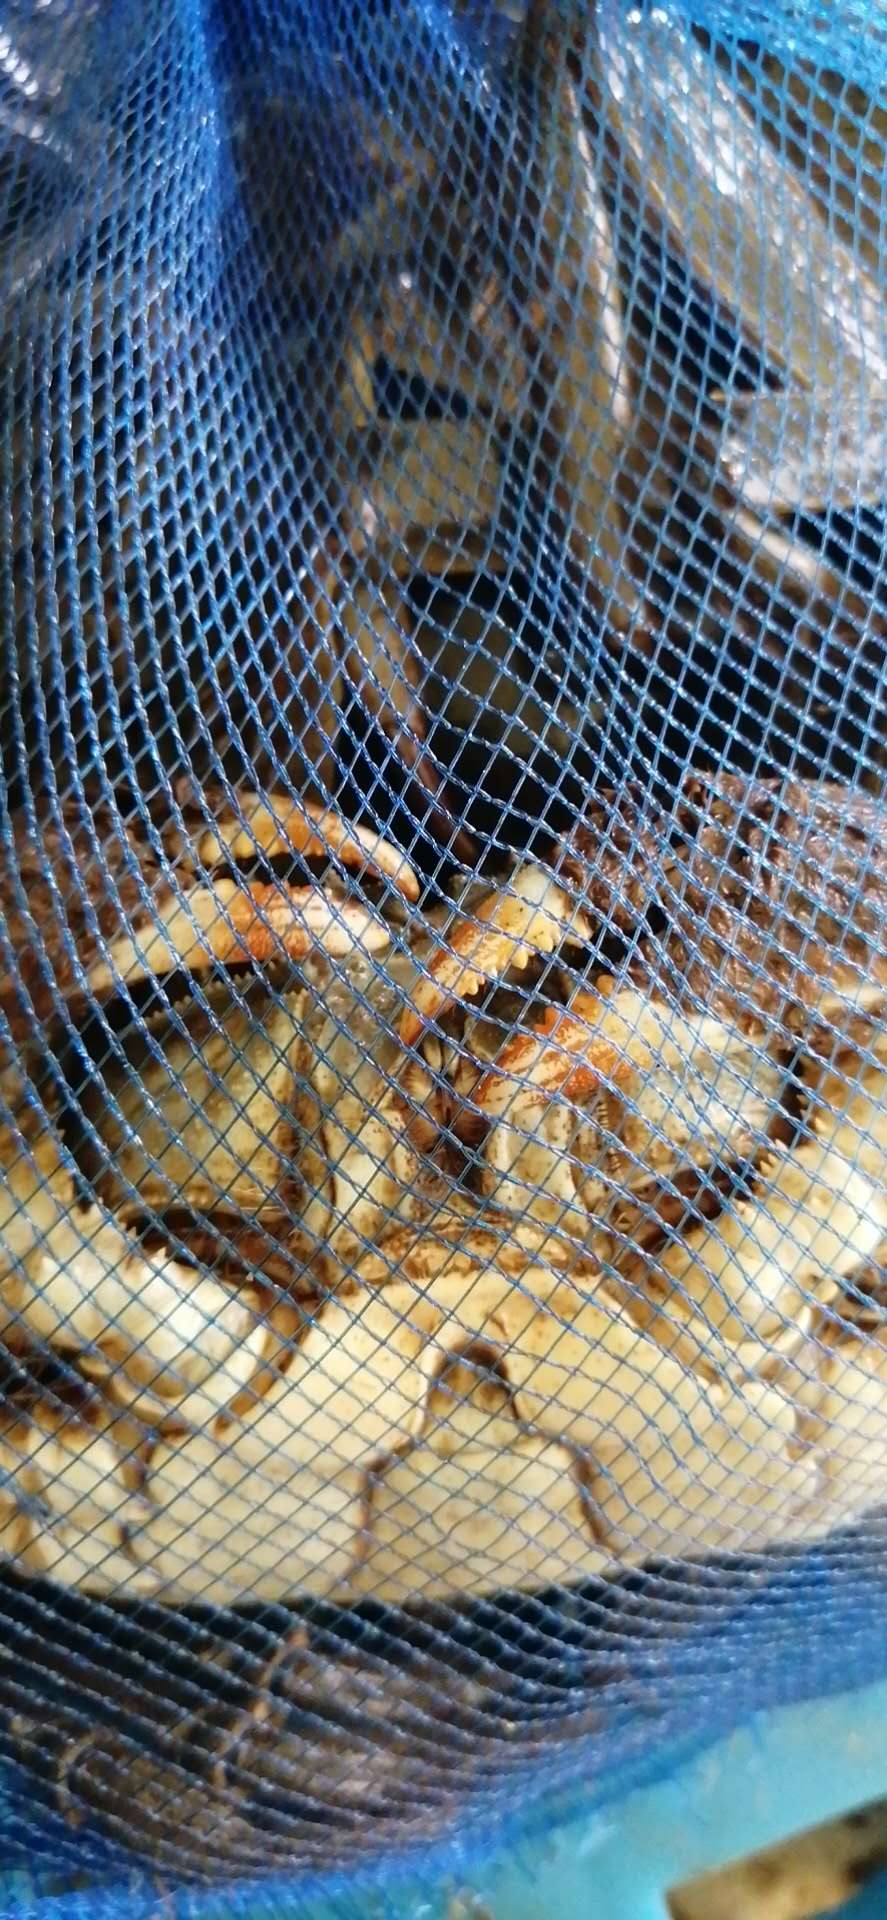 蟹钳有铁锈样附着物，是优质六月黄主要特征之一